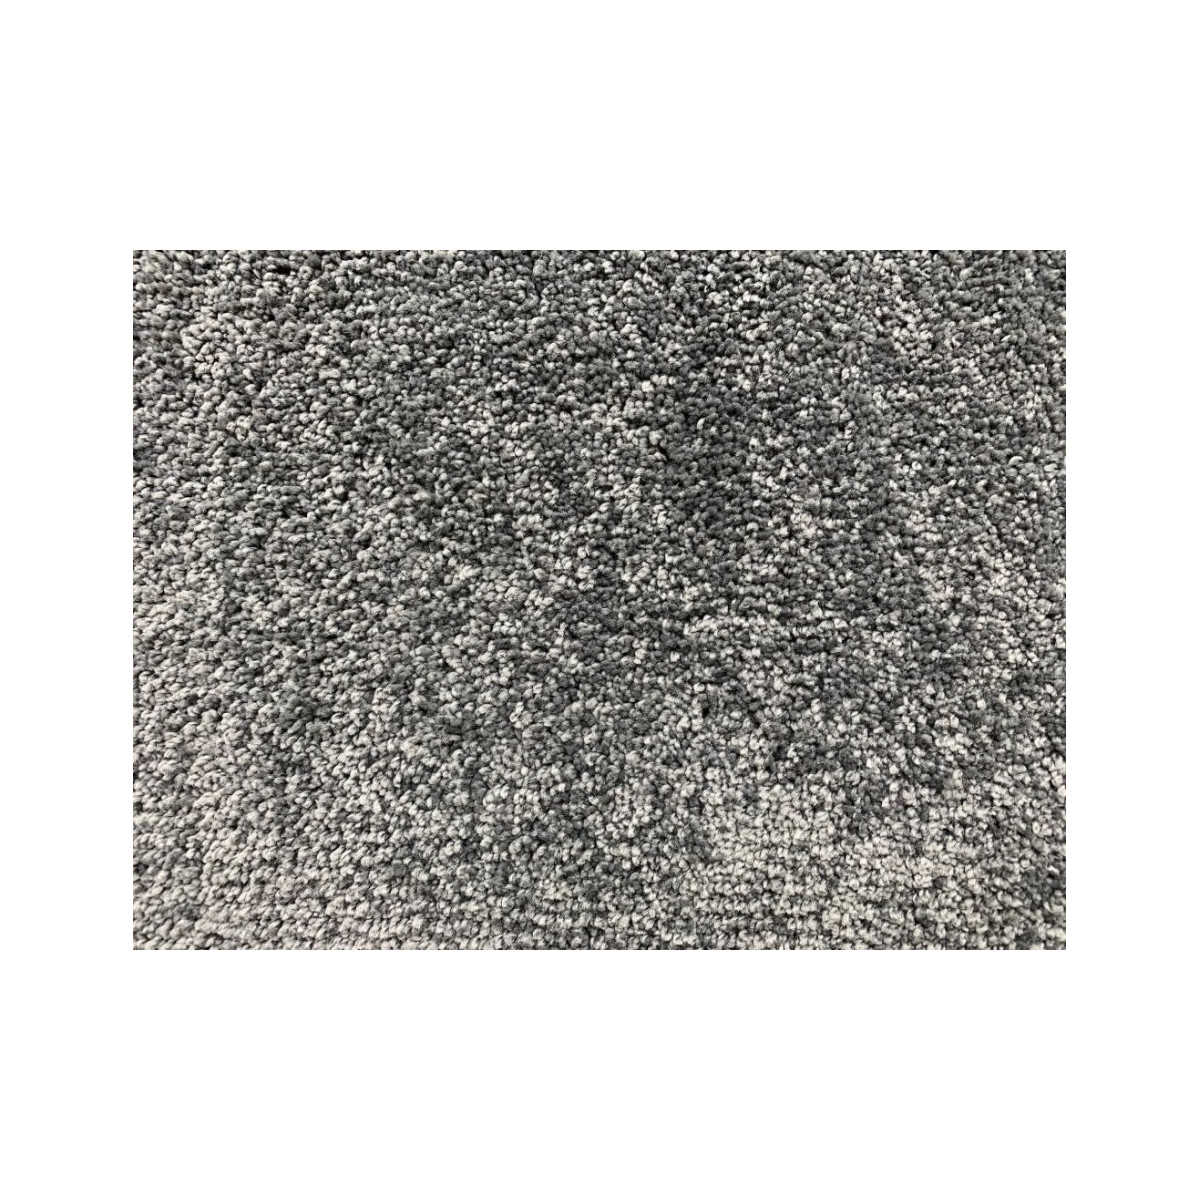 AKCE: 320x450 cm Metrážový koberec Udine taupe